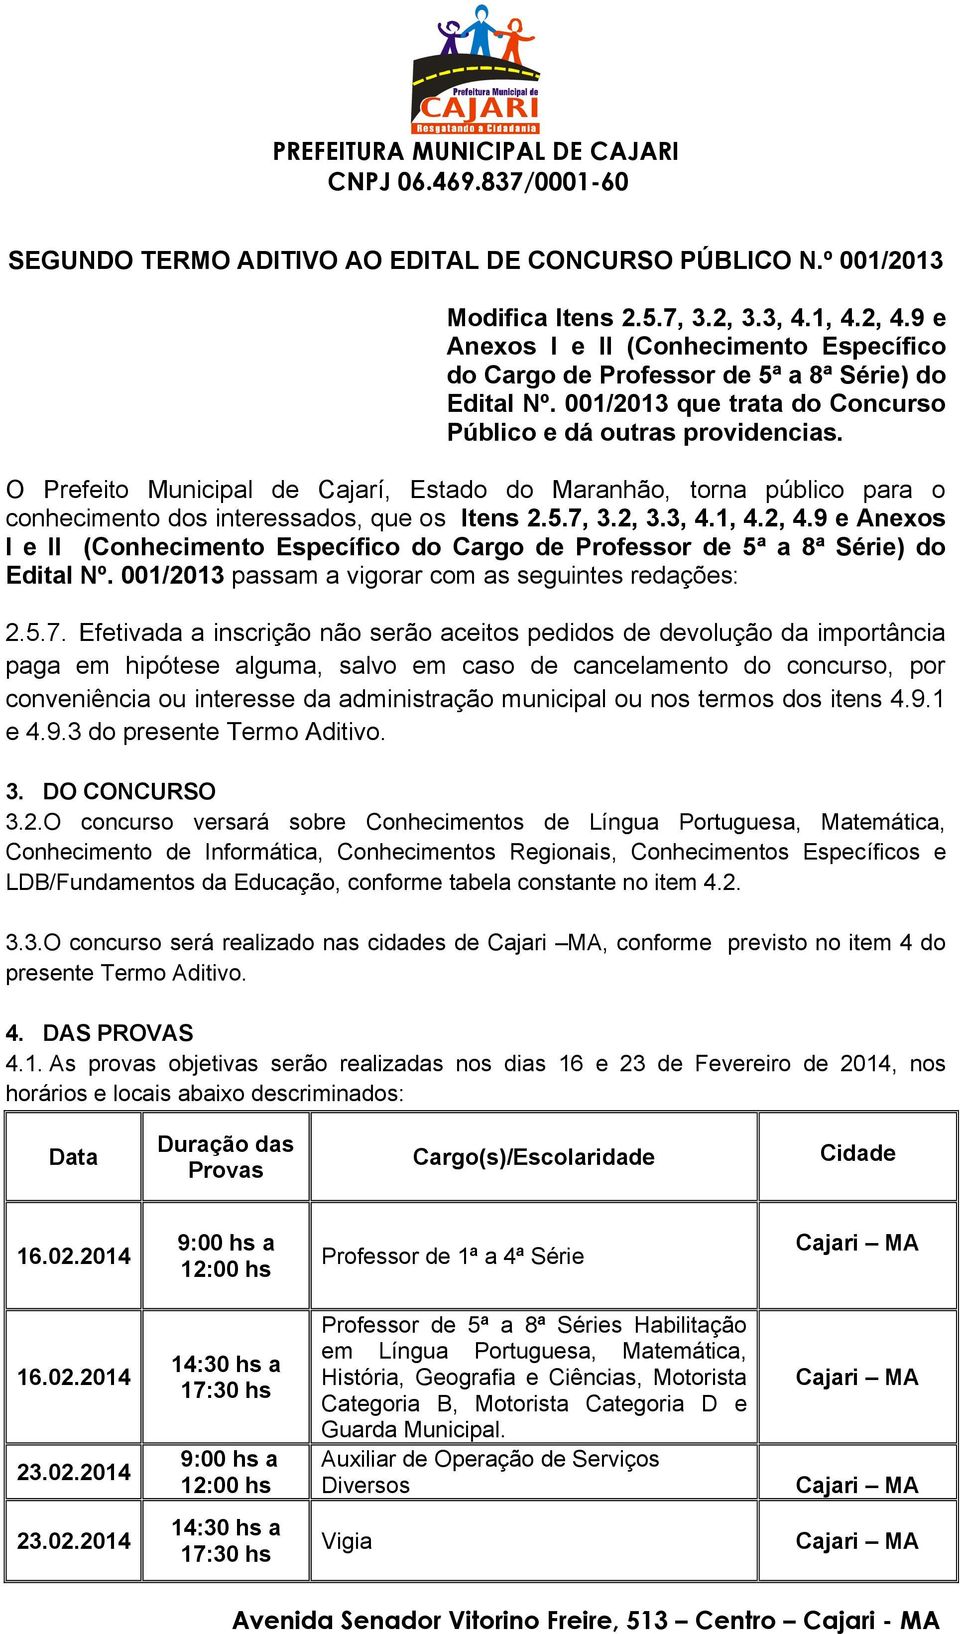 O Prefeito Municipal de Cajarí, Estado do Maranhão, torna público para o conhecimento dos interessados, que os Itens 2.5.7, 3.2, 3.3, 4.1, 4.2, 4.